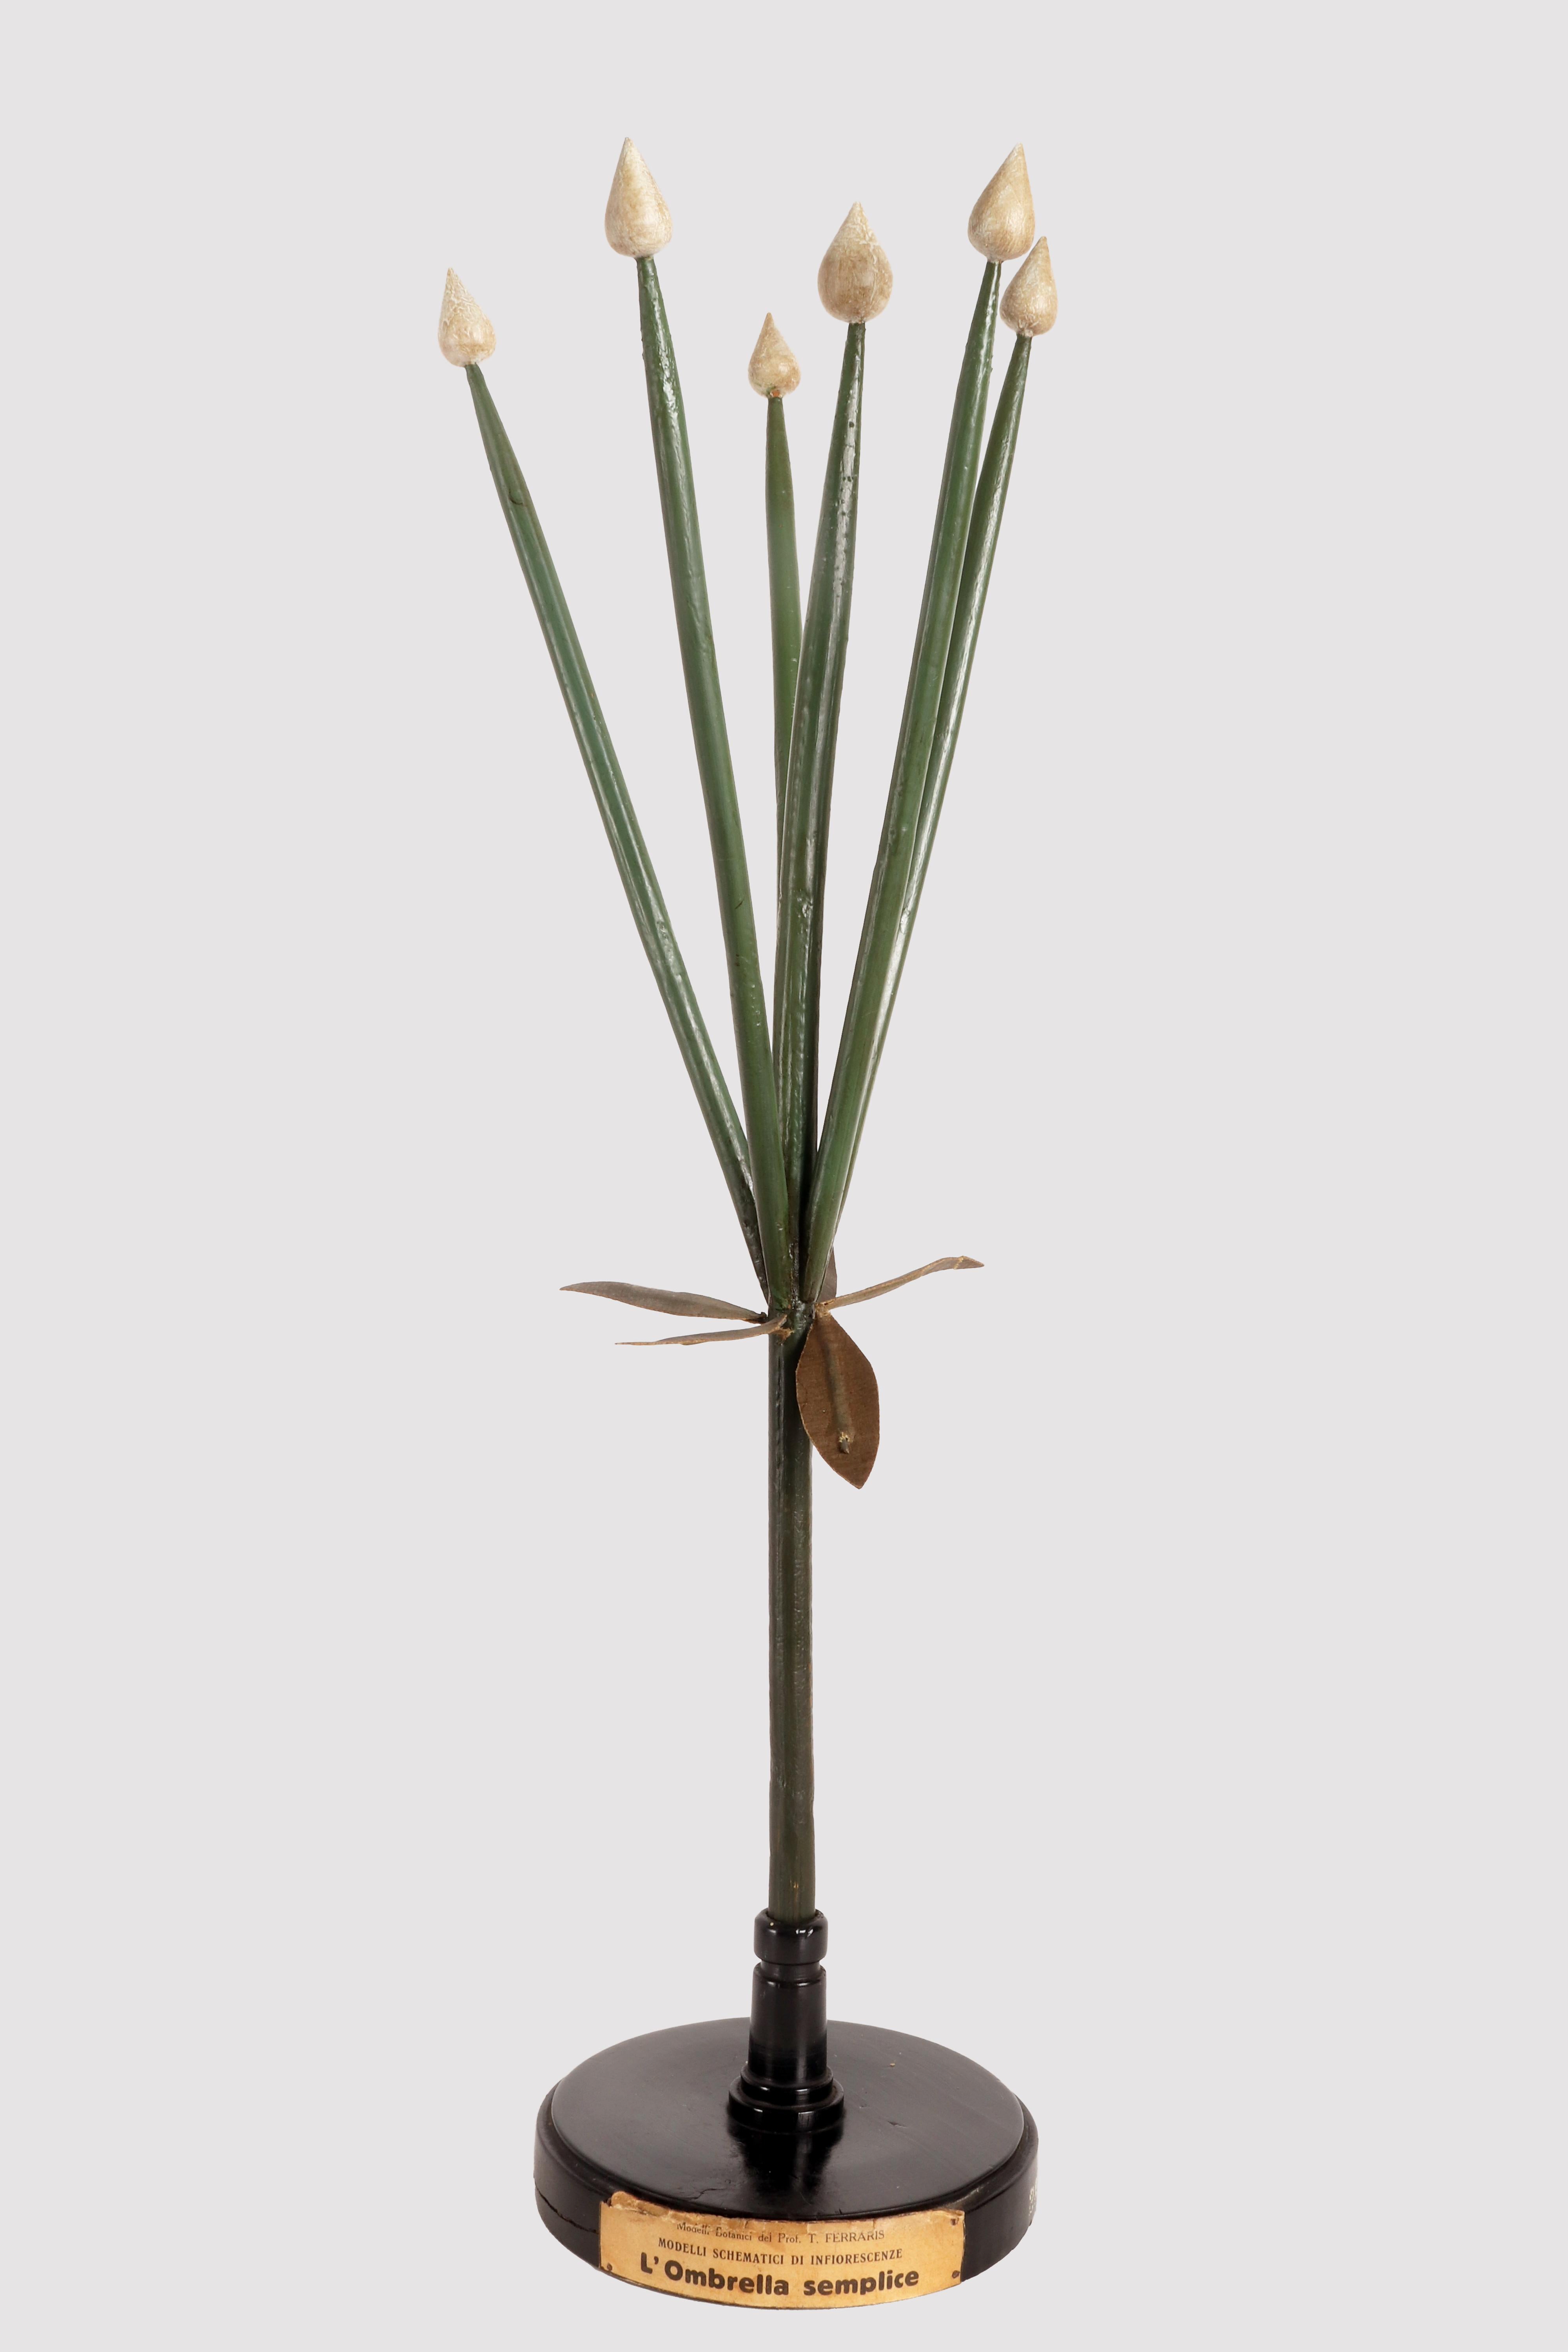 Rare modèle botanique schématique du Prof. AT&T, à usage didactique, d'un type de spécimen d'inflorescence, le Parapluie simple, réalisé avec des gemmes colorées en plâtre peintes à la main, des branches en bois et des éléments en papier mâché